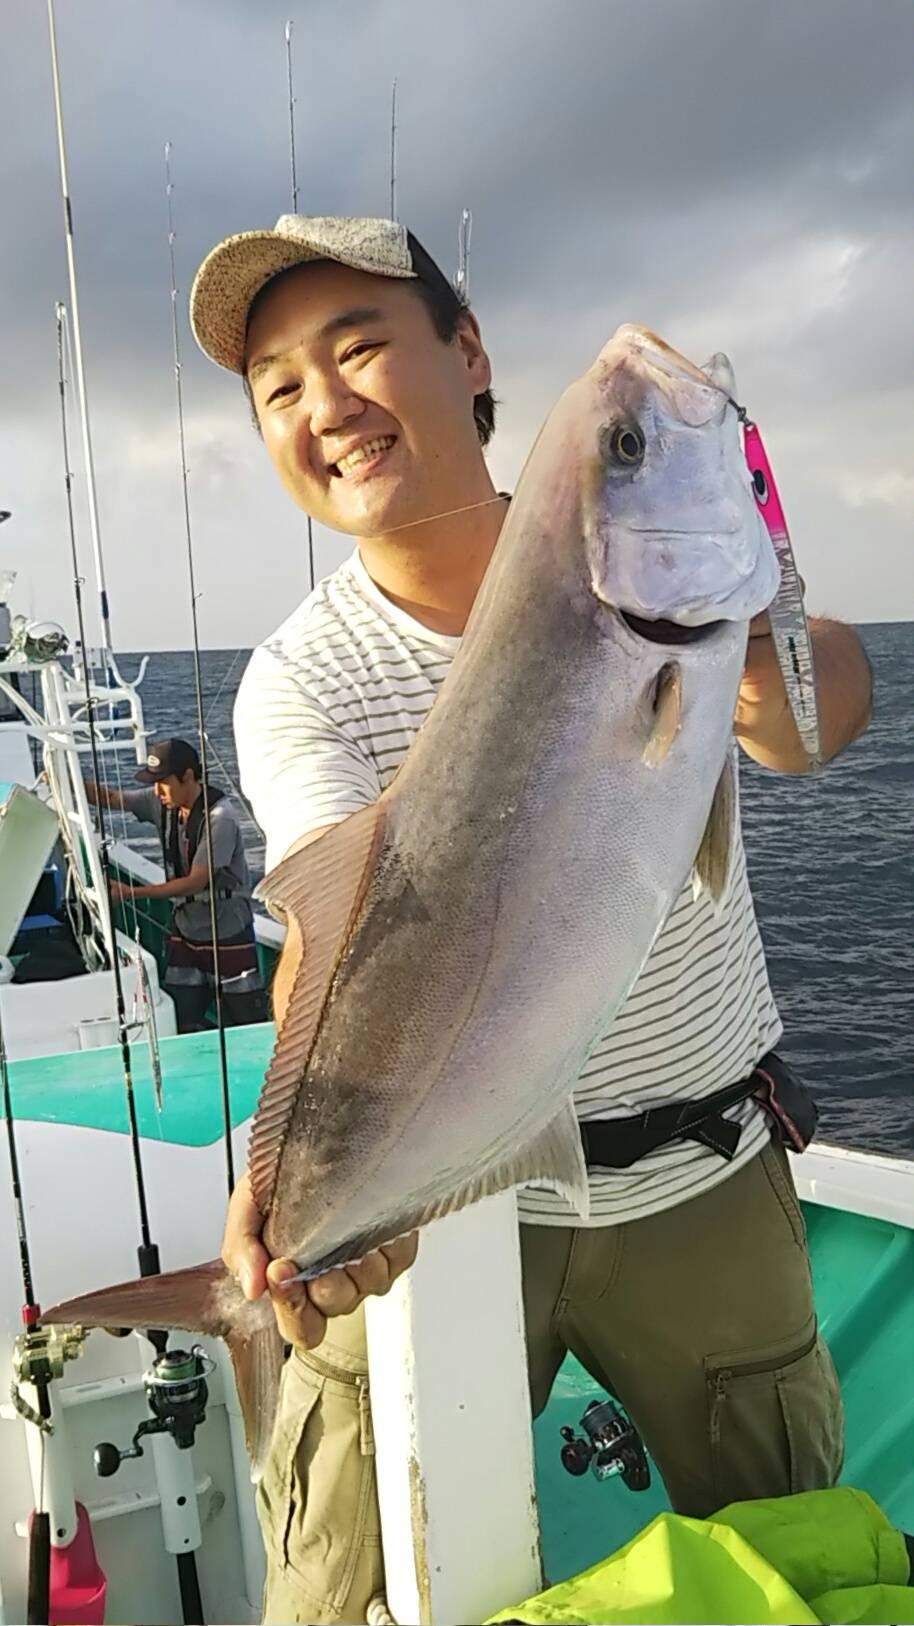 静岡県御前崎 おまえざき 沖 カンパチジギング 釣具のイシグロ 釣り情報サイト